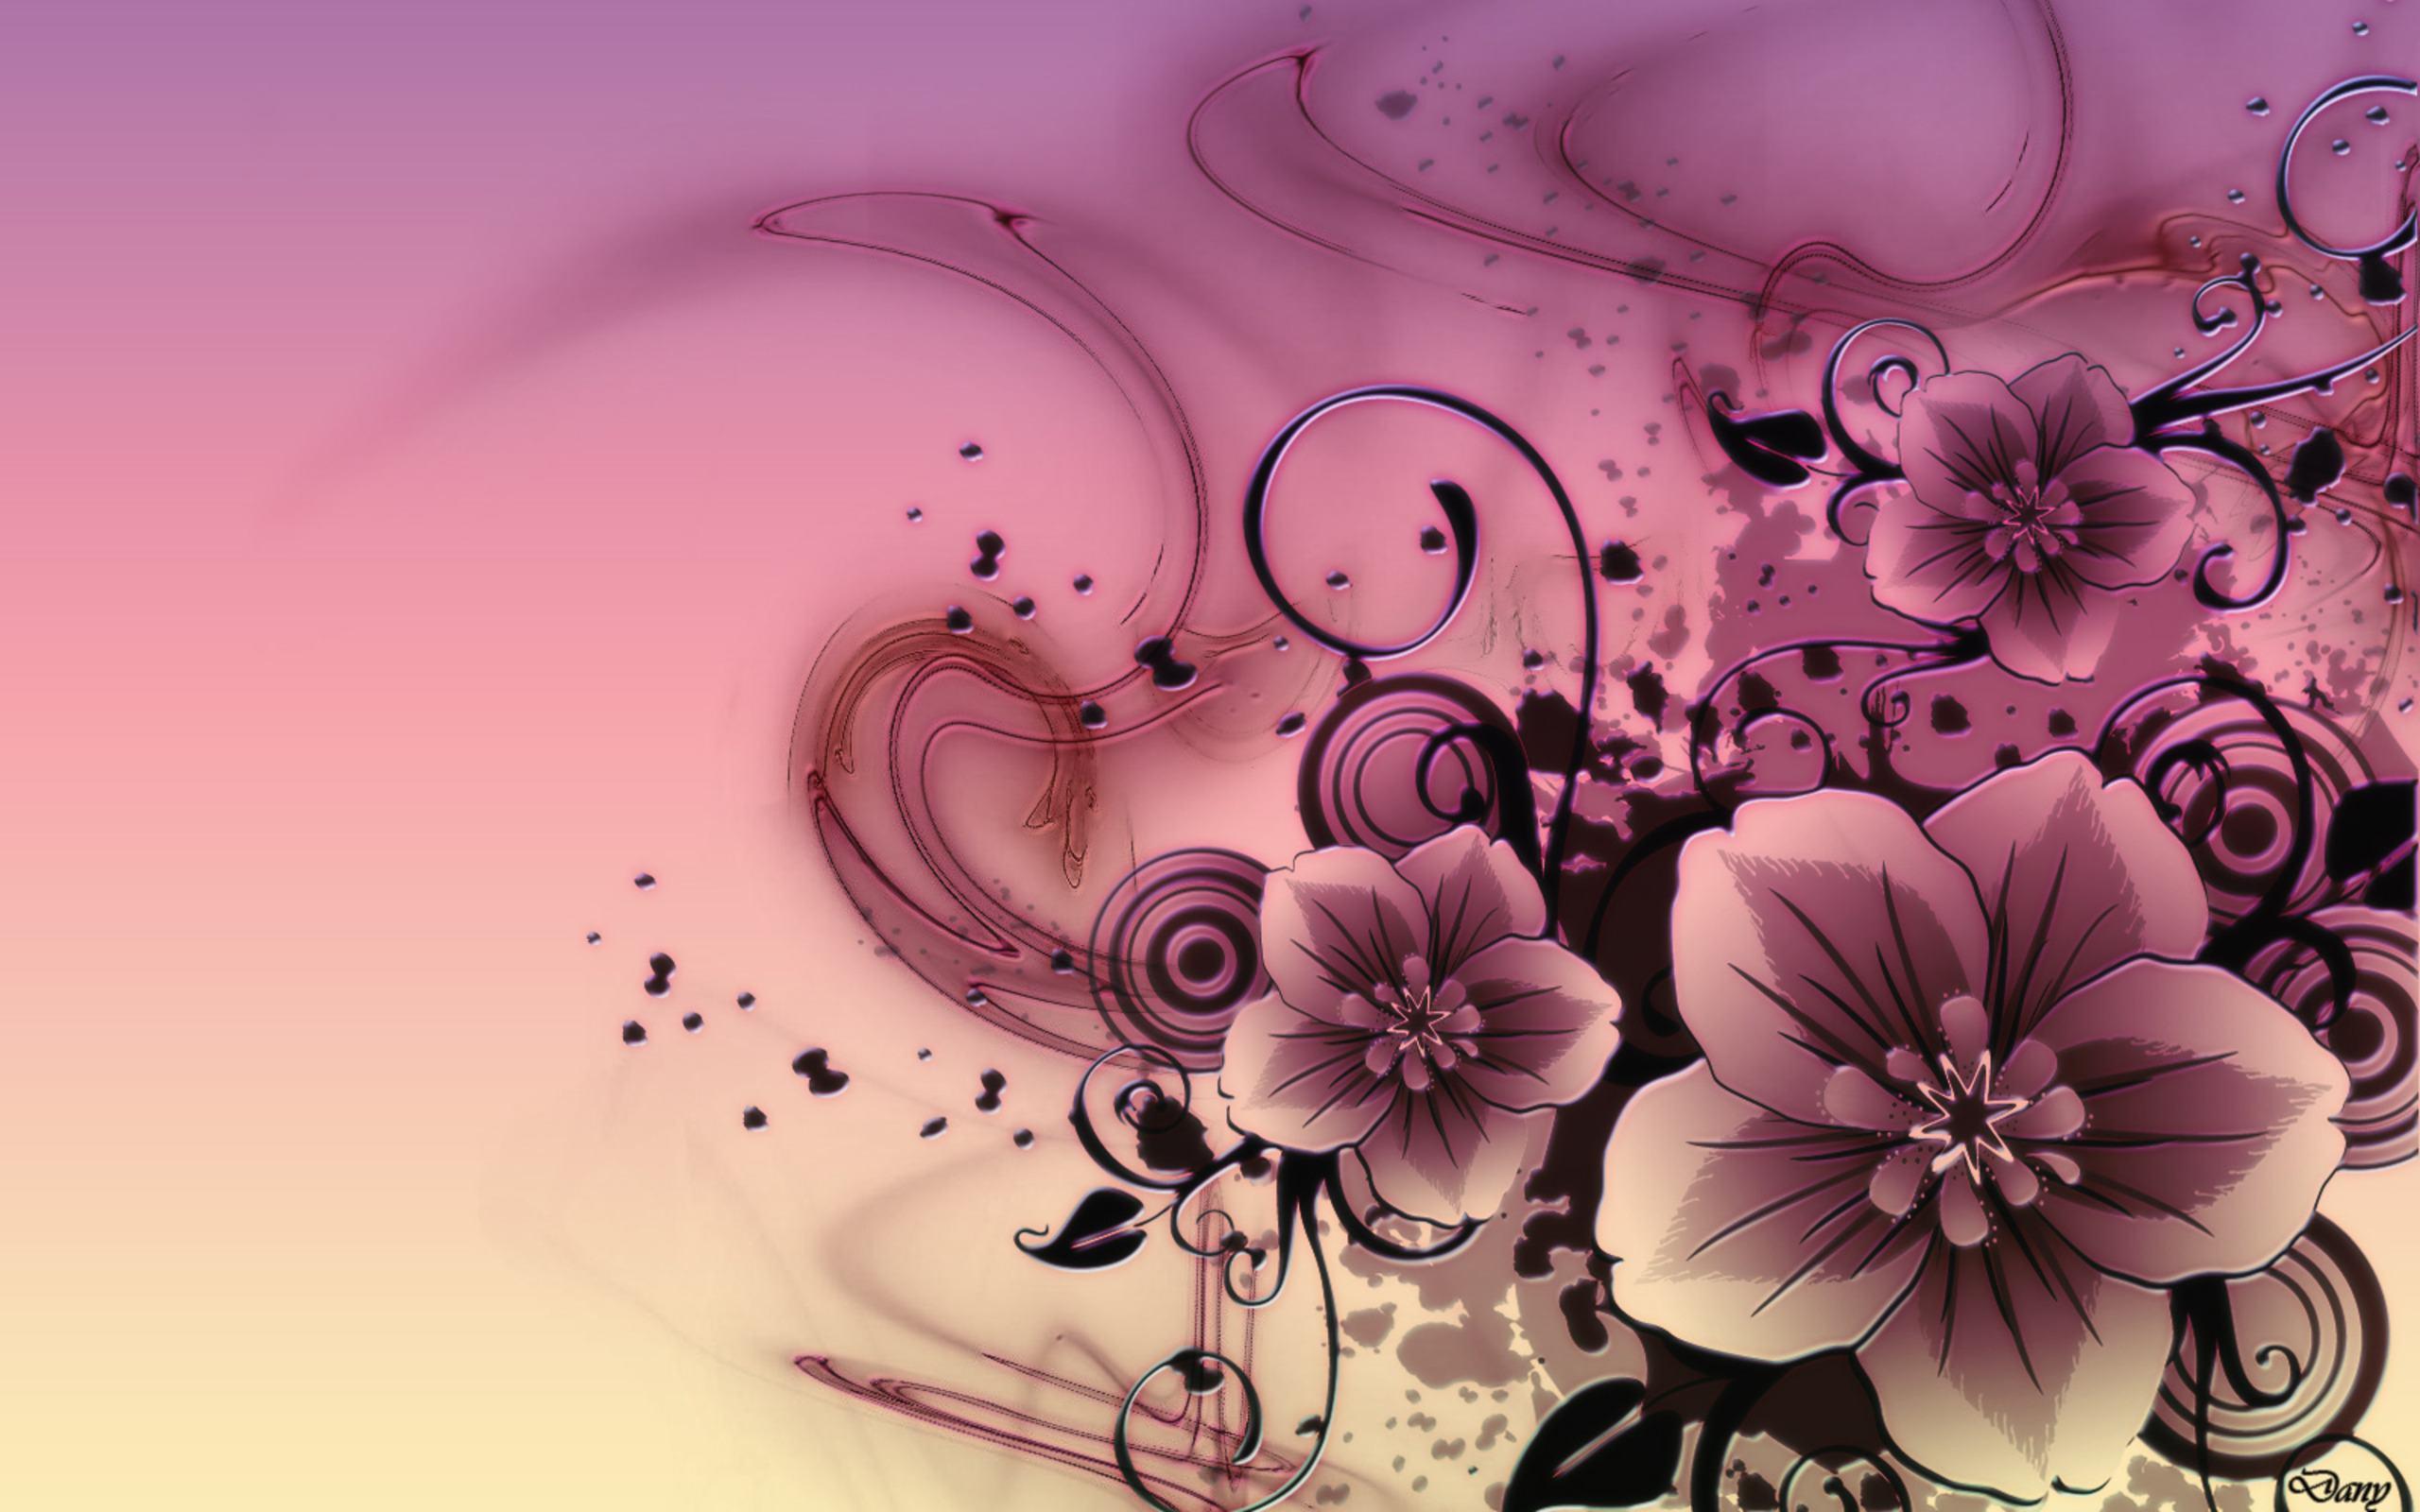 Flowers wallpaper for desktop background full screen